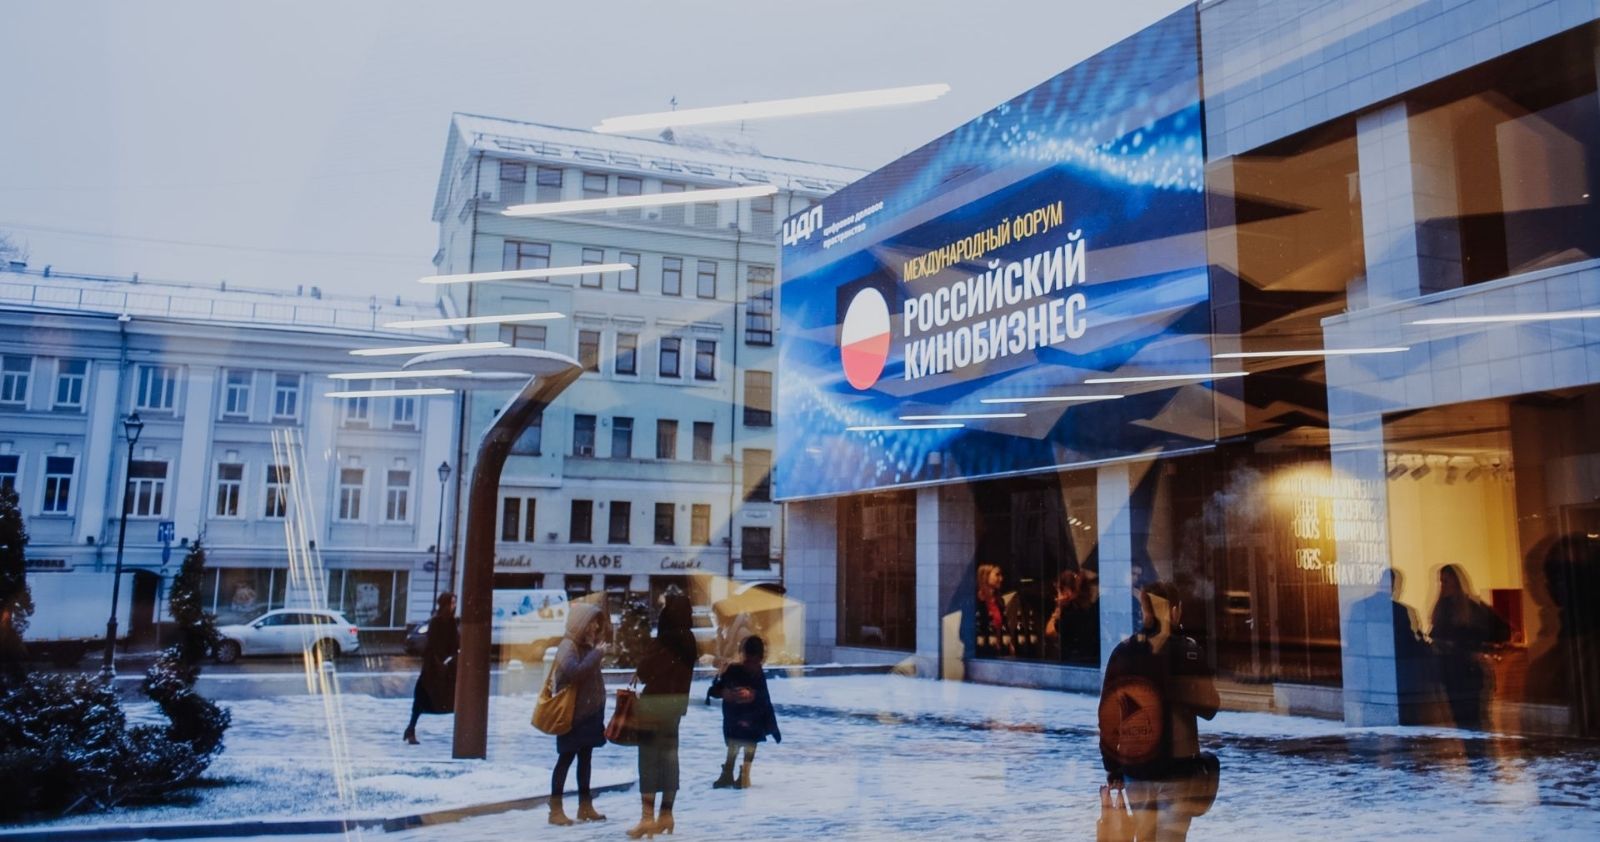 Московский международный кинорынок «Российский кинобизнес» представил программу